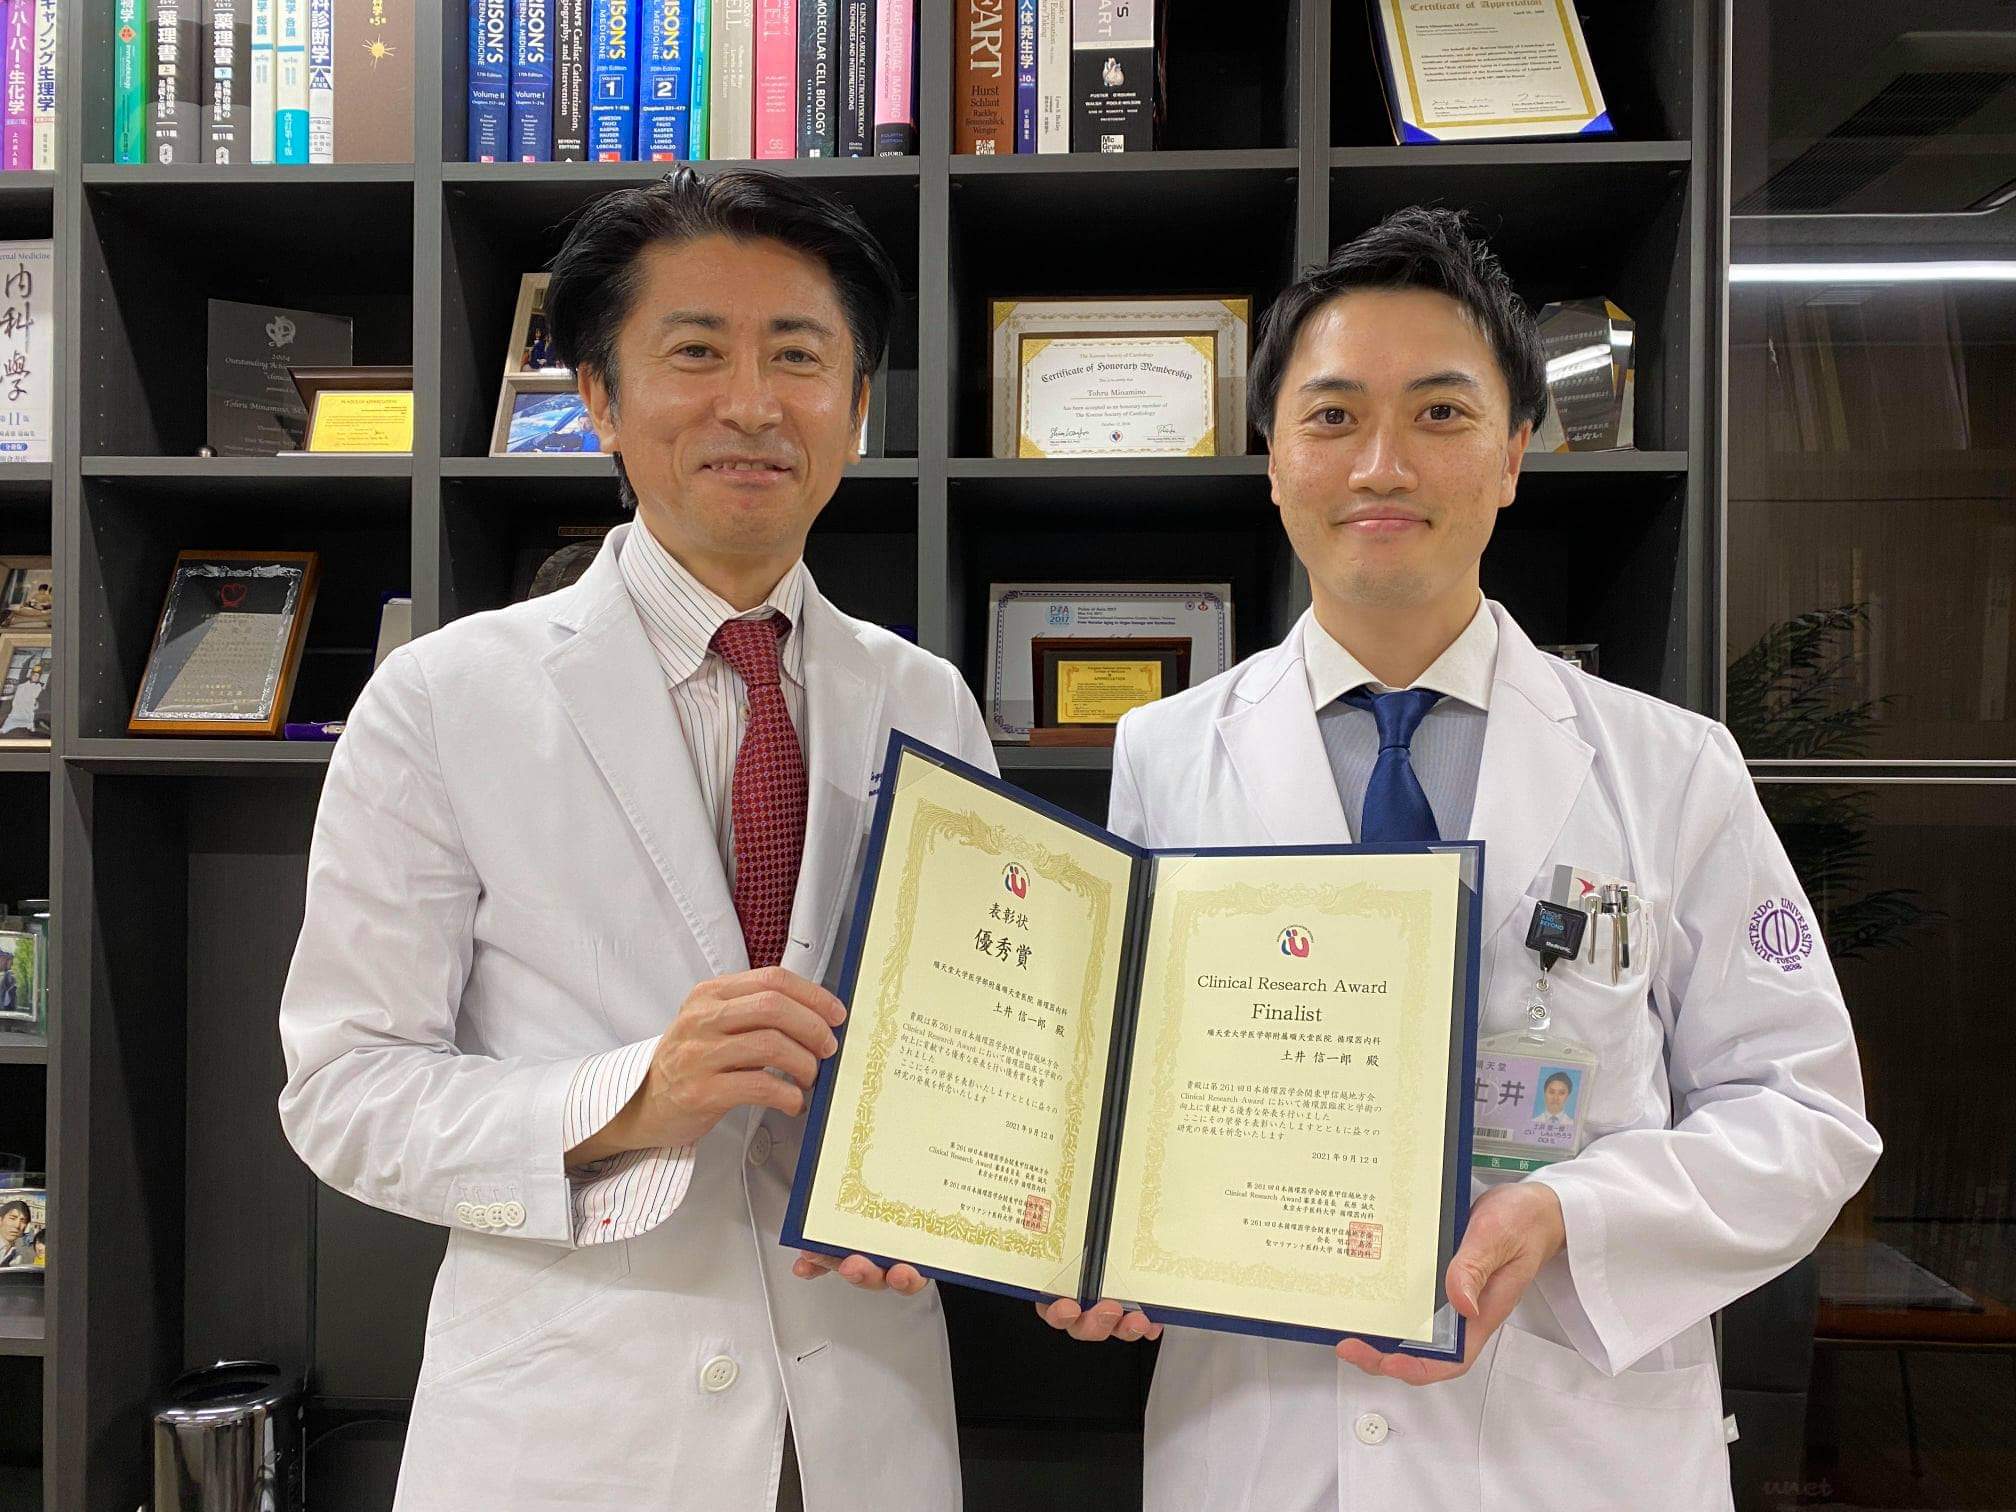 土井信一郎先生が第261回日本循環器学会関東甲信越地方会で、Clinical Research Award 優秀賞を受賞されました！